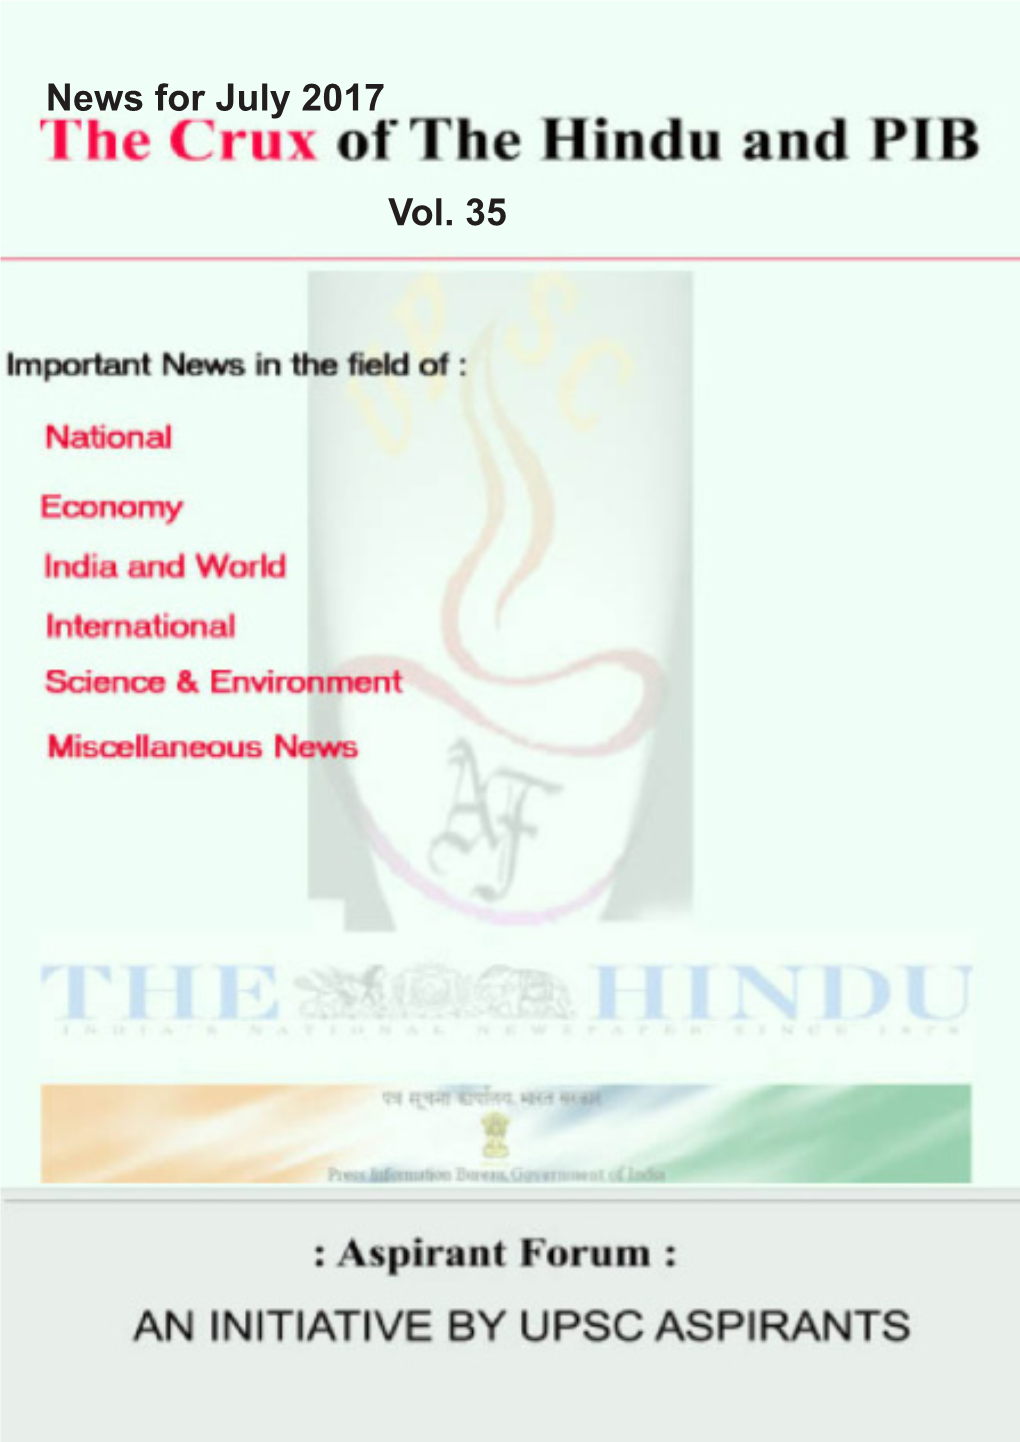 Aspirantforum.Com Hindu and PIB Crux Vol